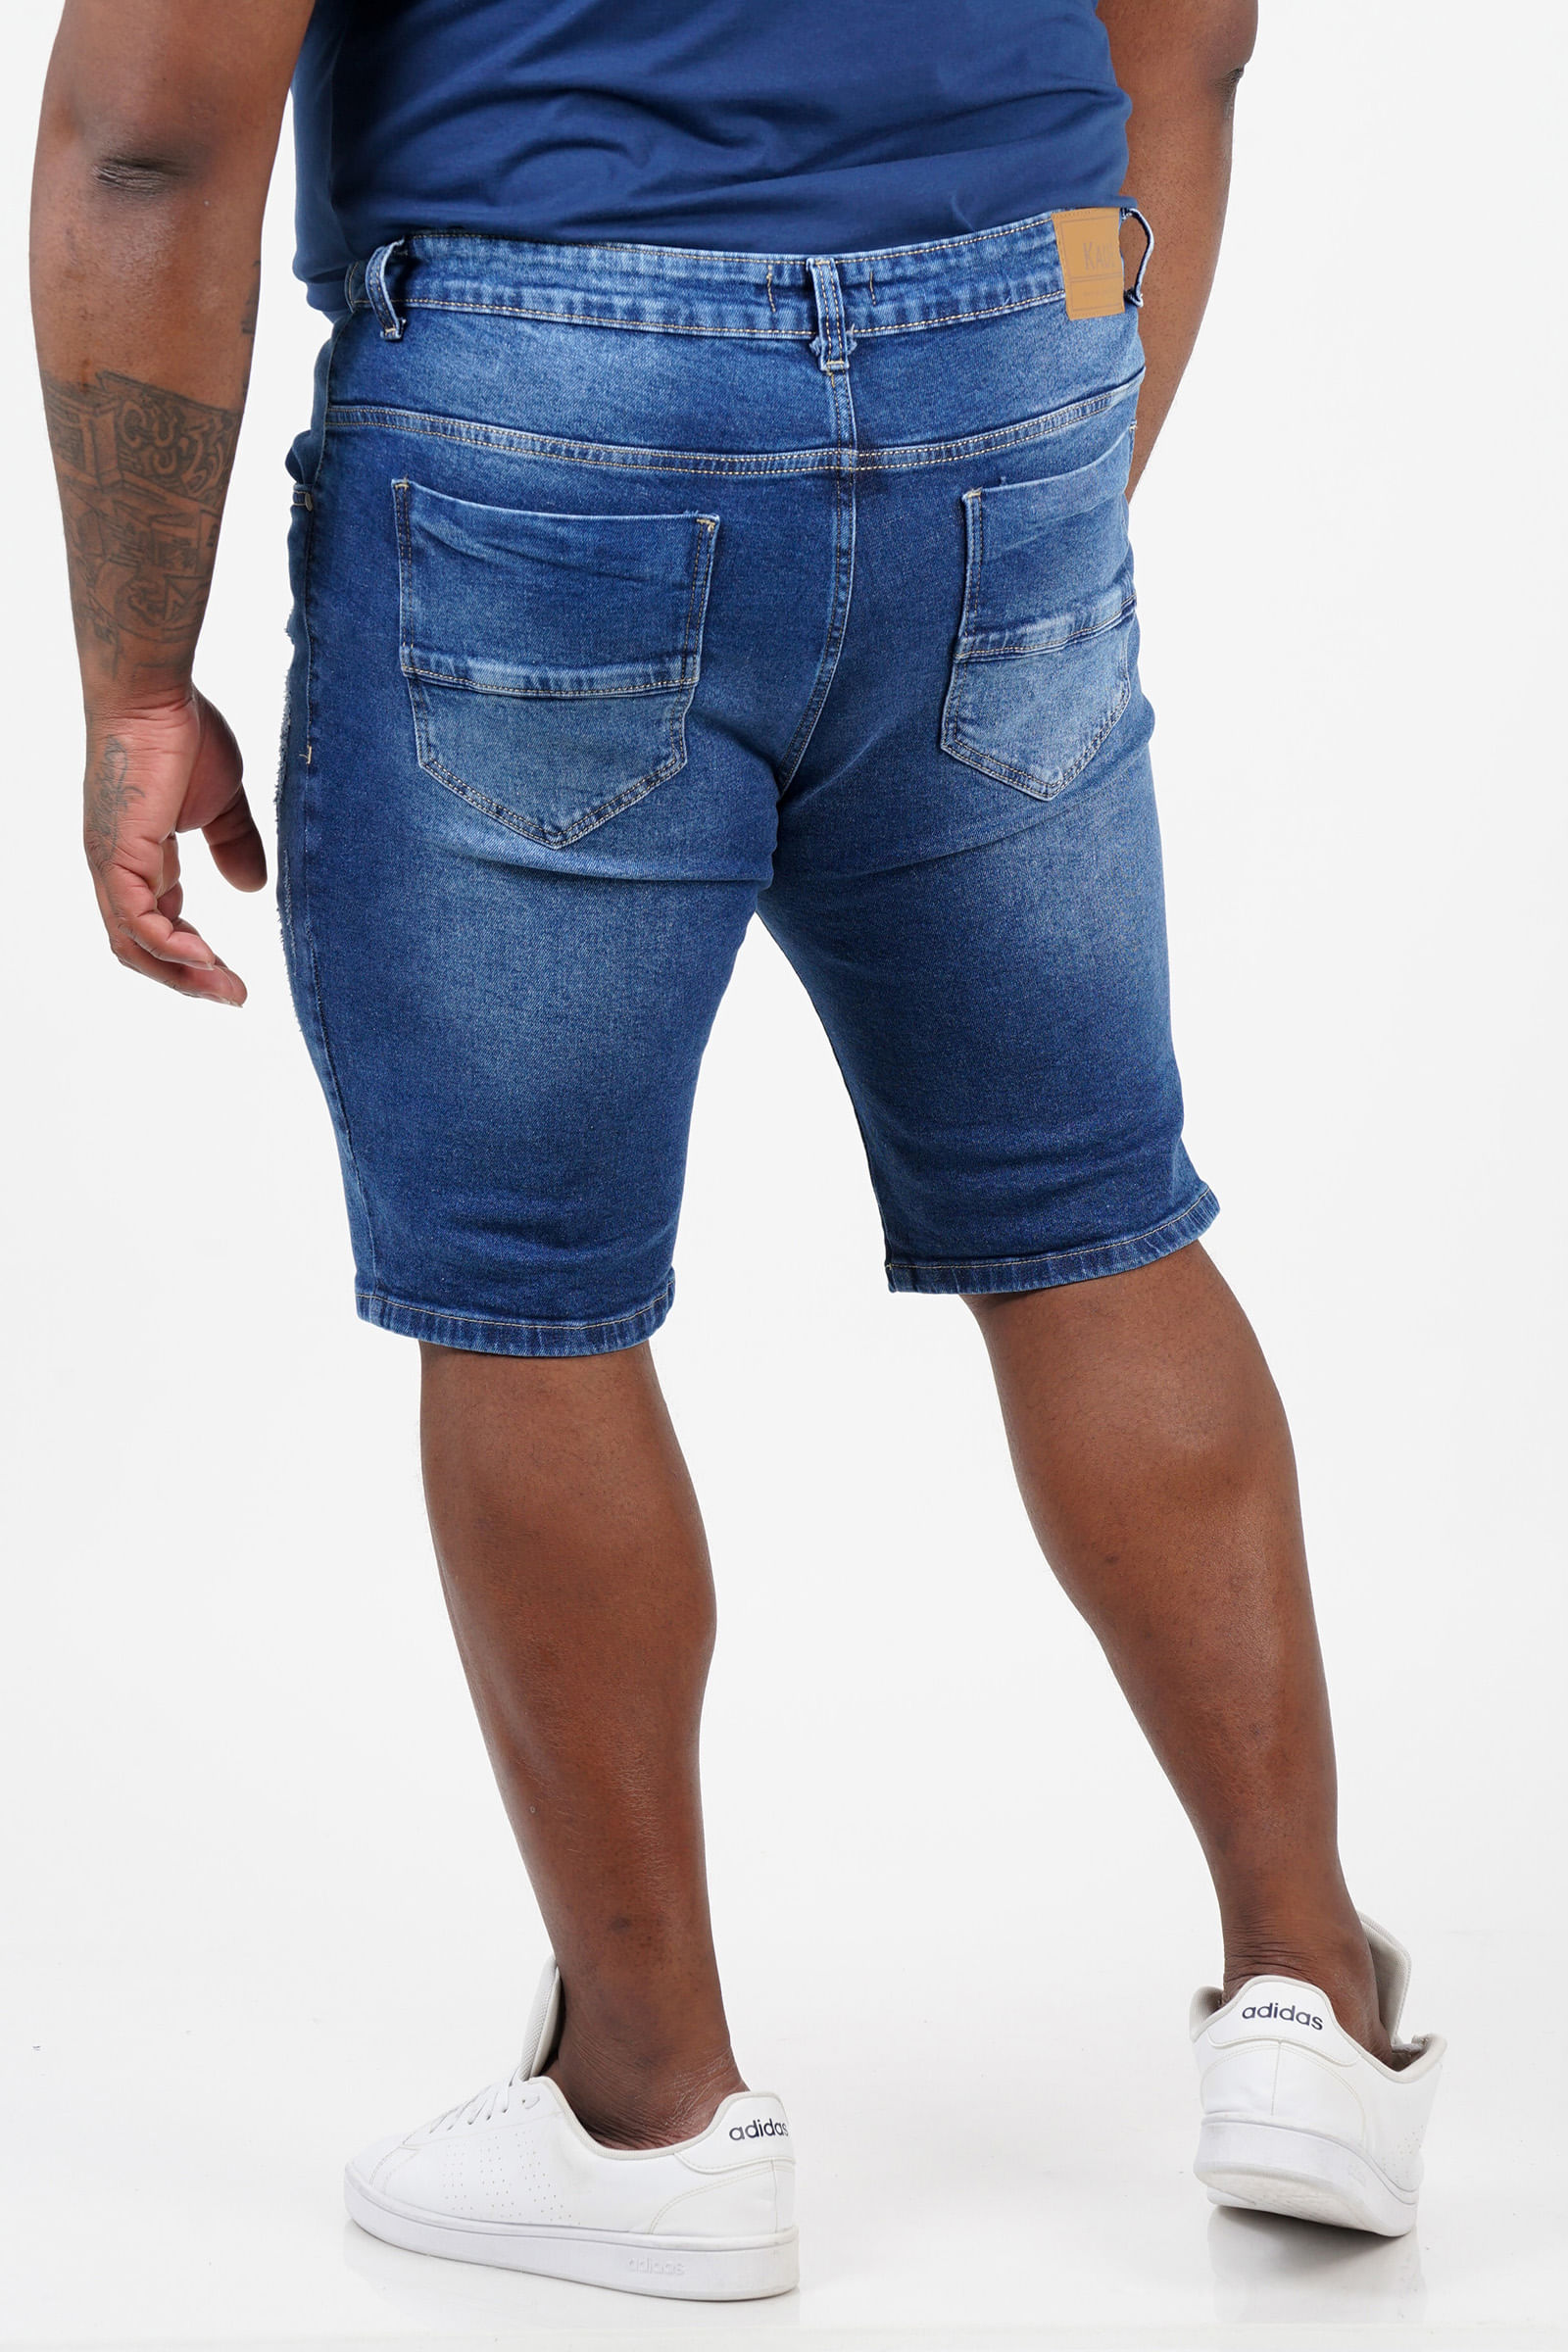 Bermuda-jeans-masculina-plus-size